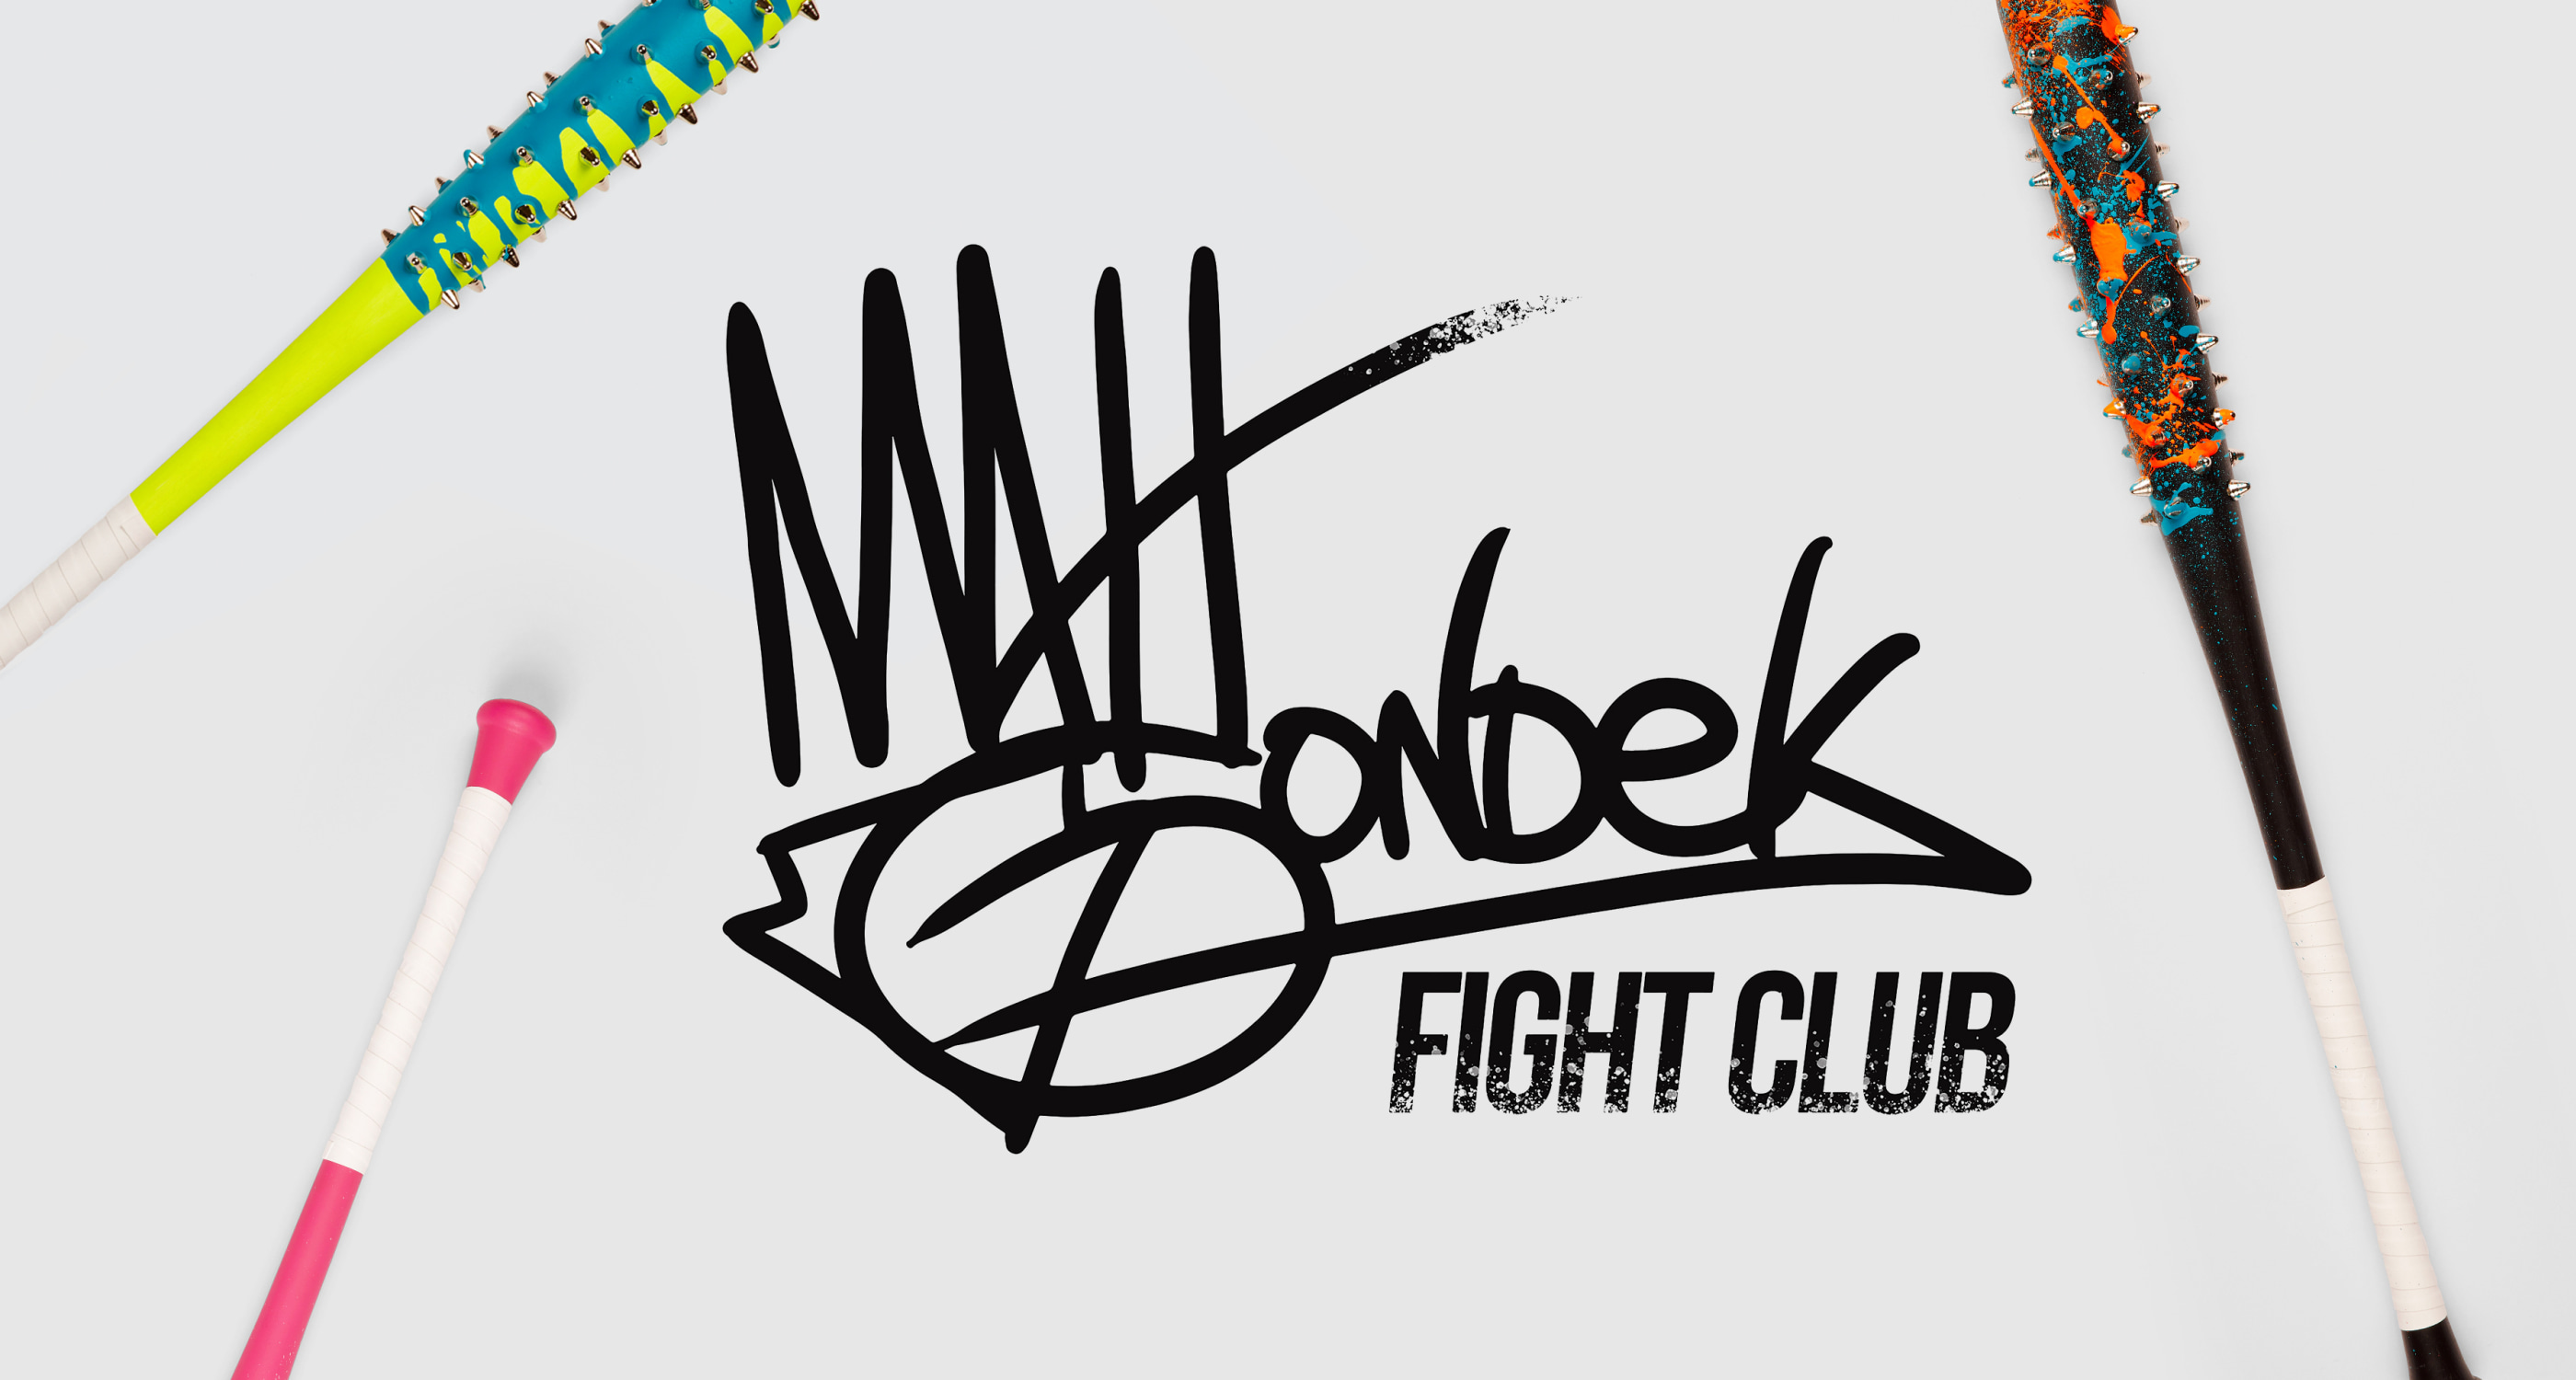 Matt Gondek: Fight Club